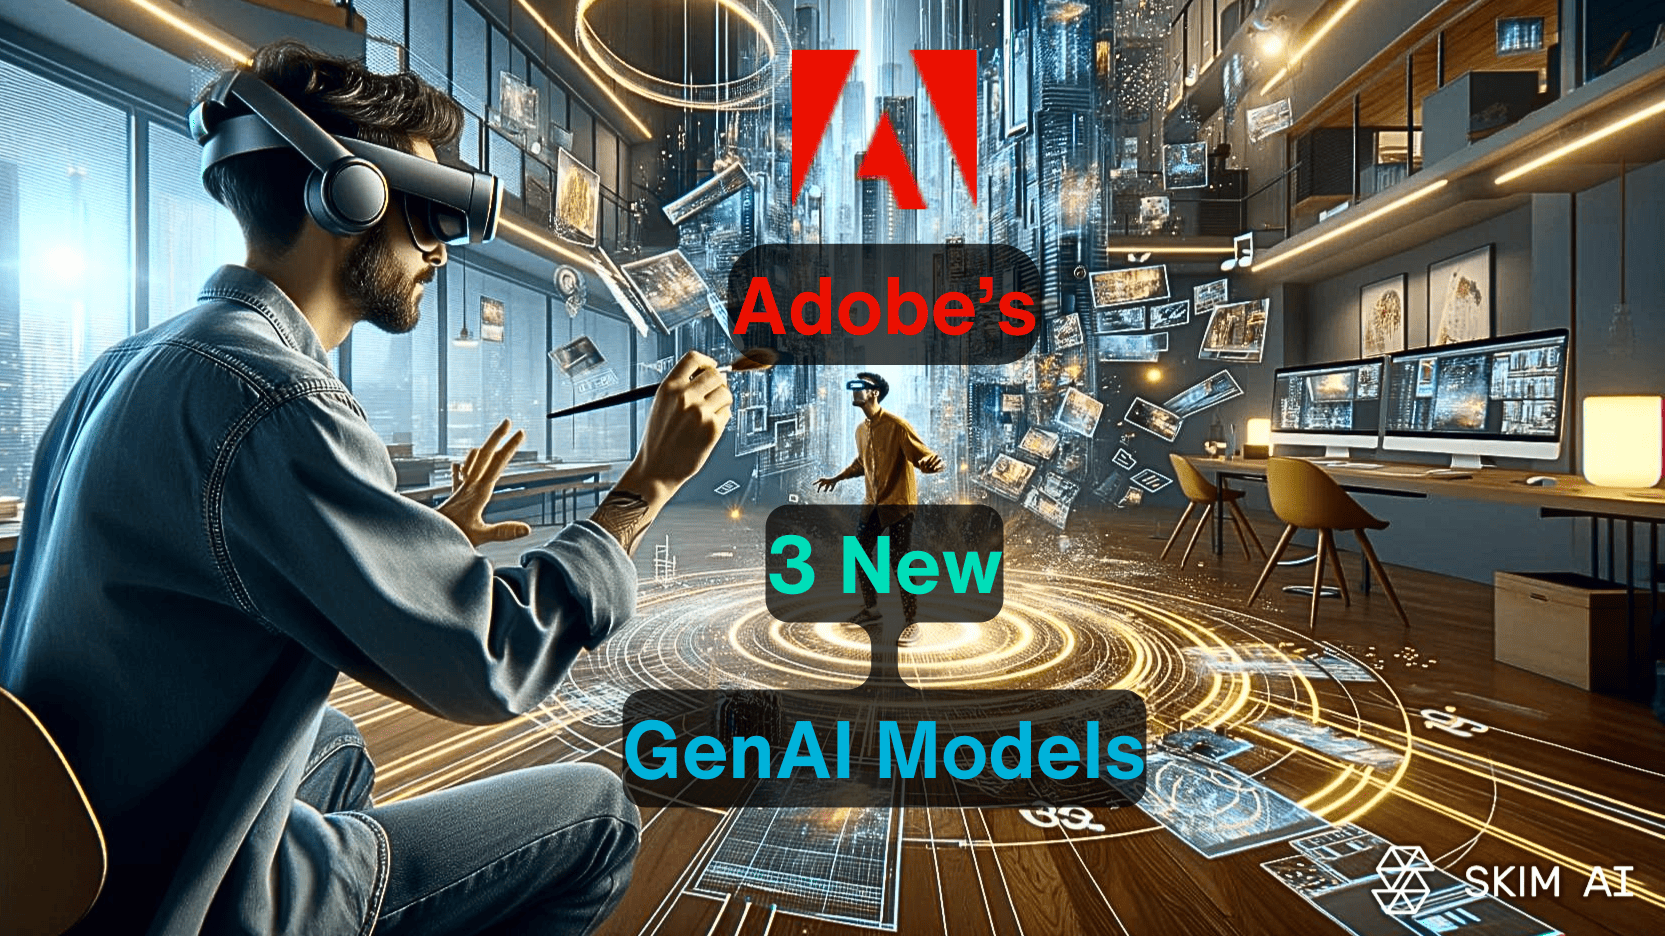 Adobe récidive avec 3 nouveaux modèles d'IA générative